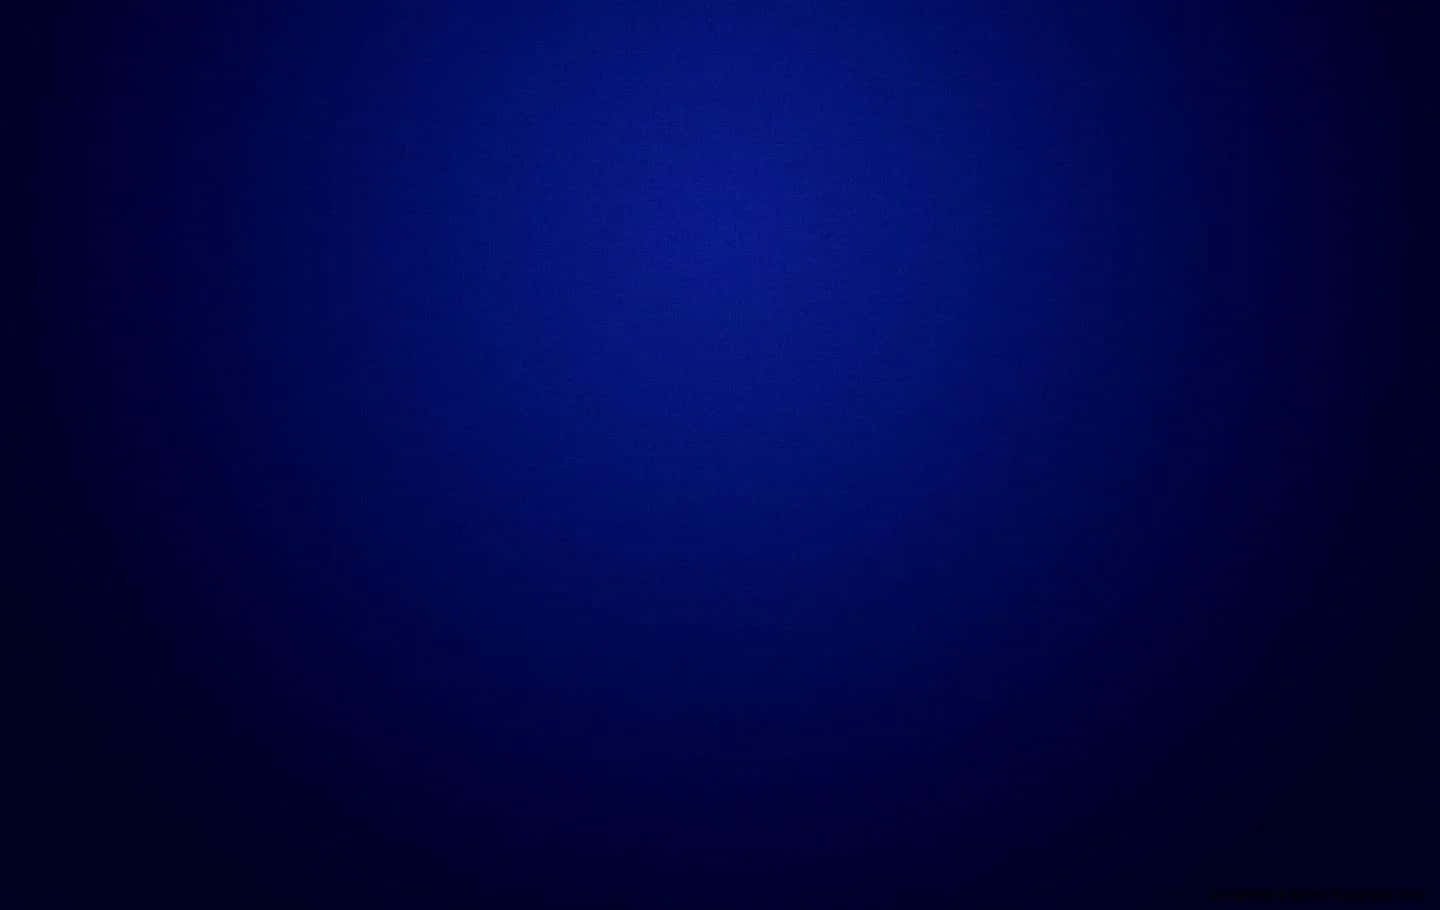 blue vignette background